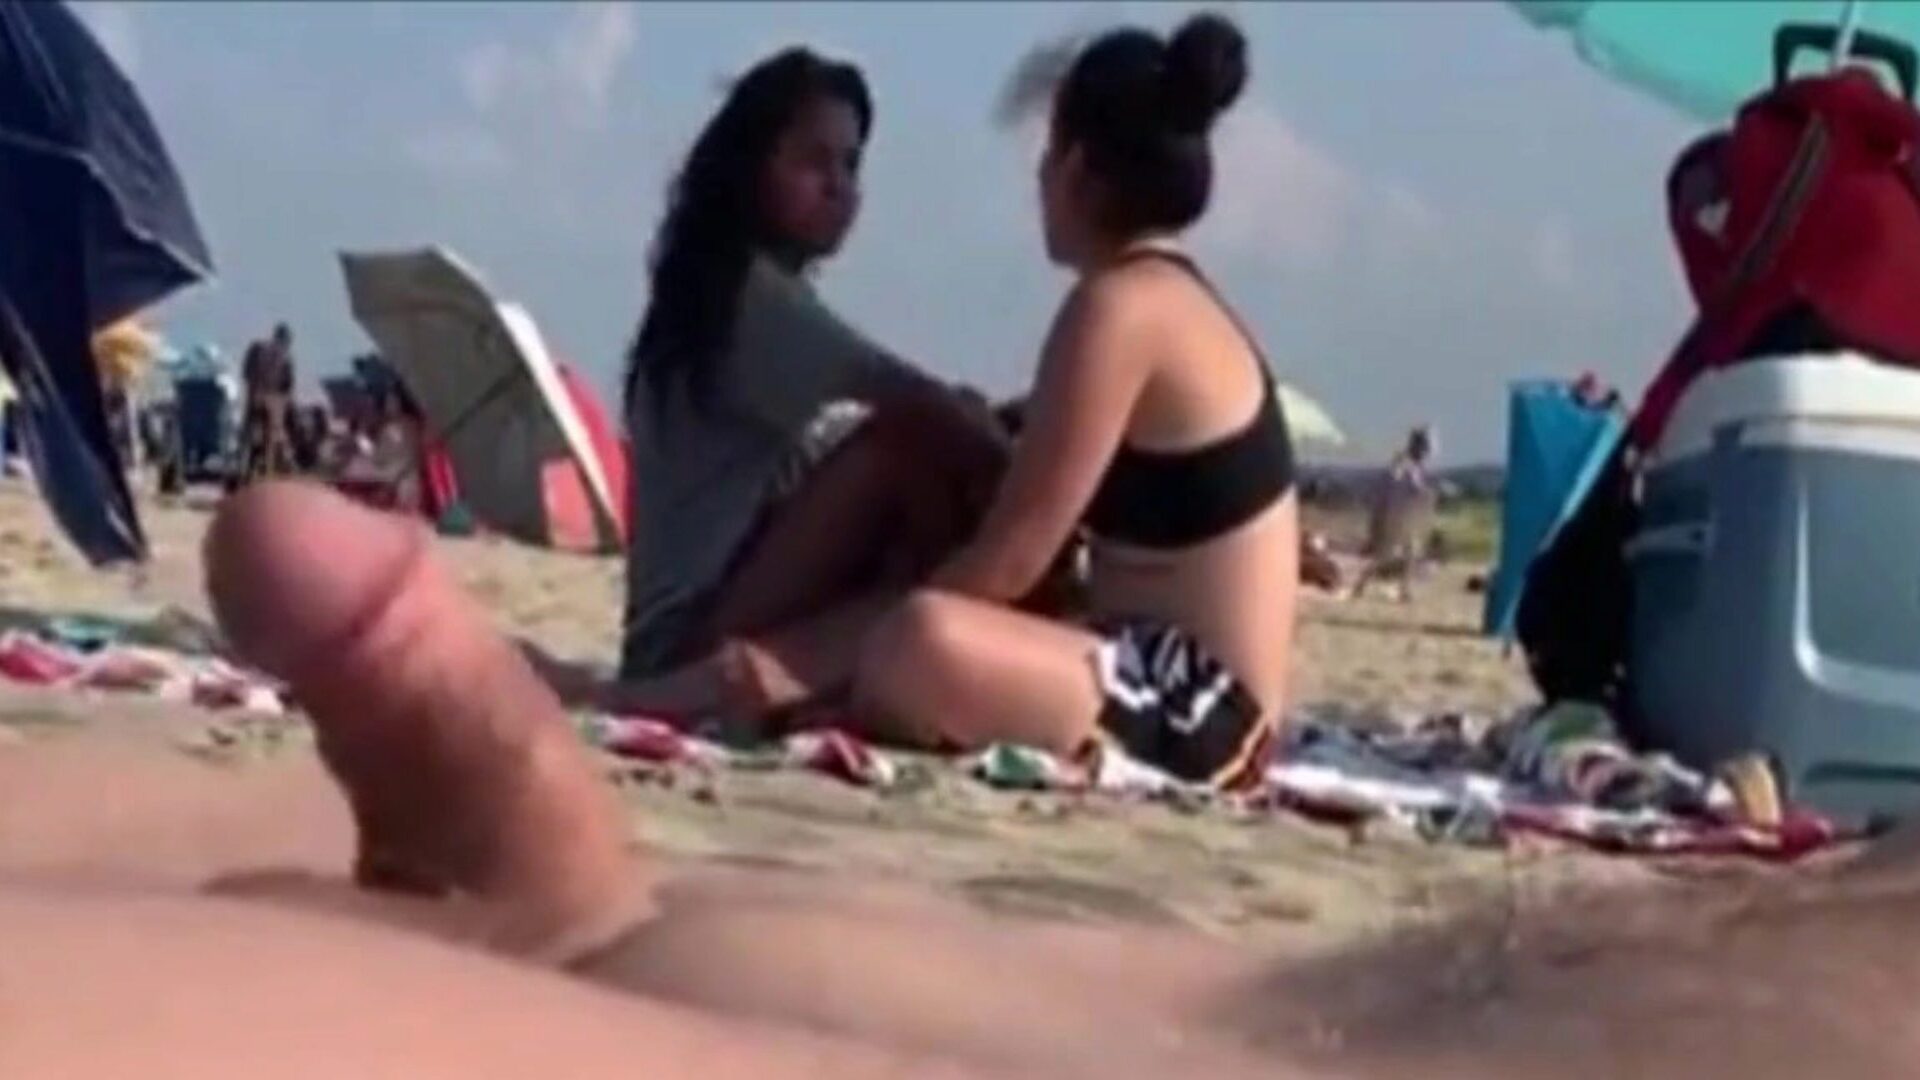 deux filles observent mon dur sur une plage publique deux beautés m'assistant à mon wang, laissez-les partir ..